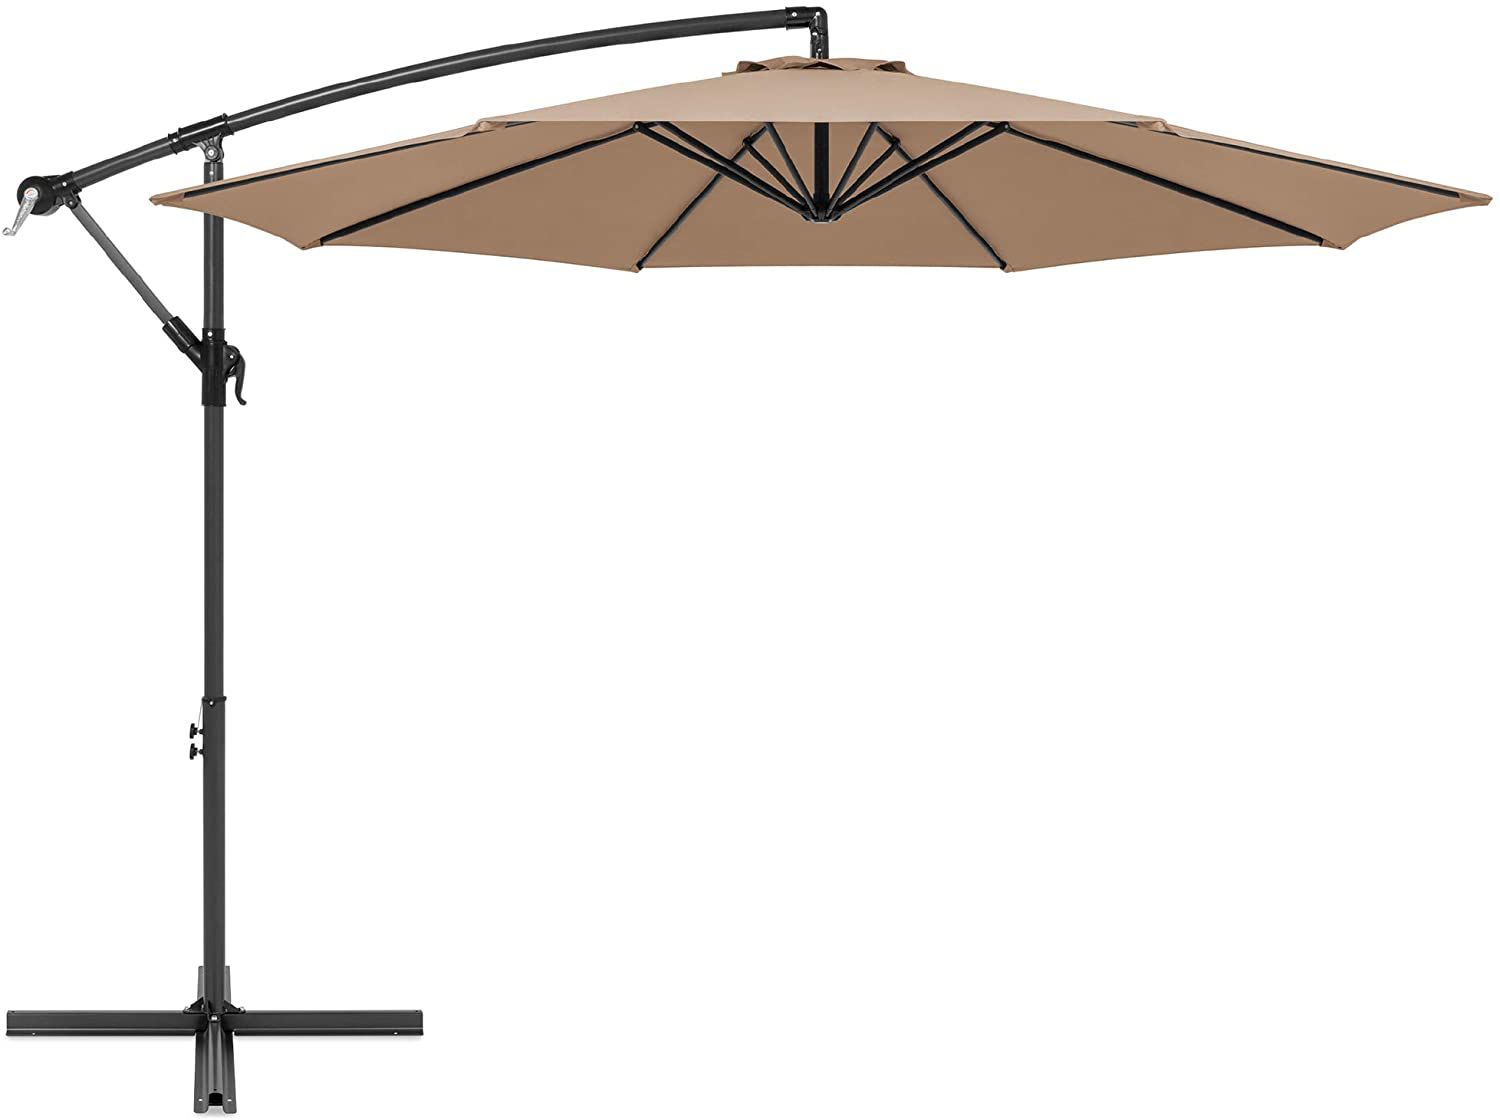 tan patio umbrella with cantilever base